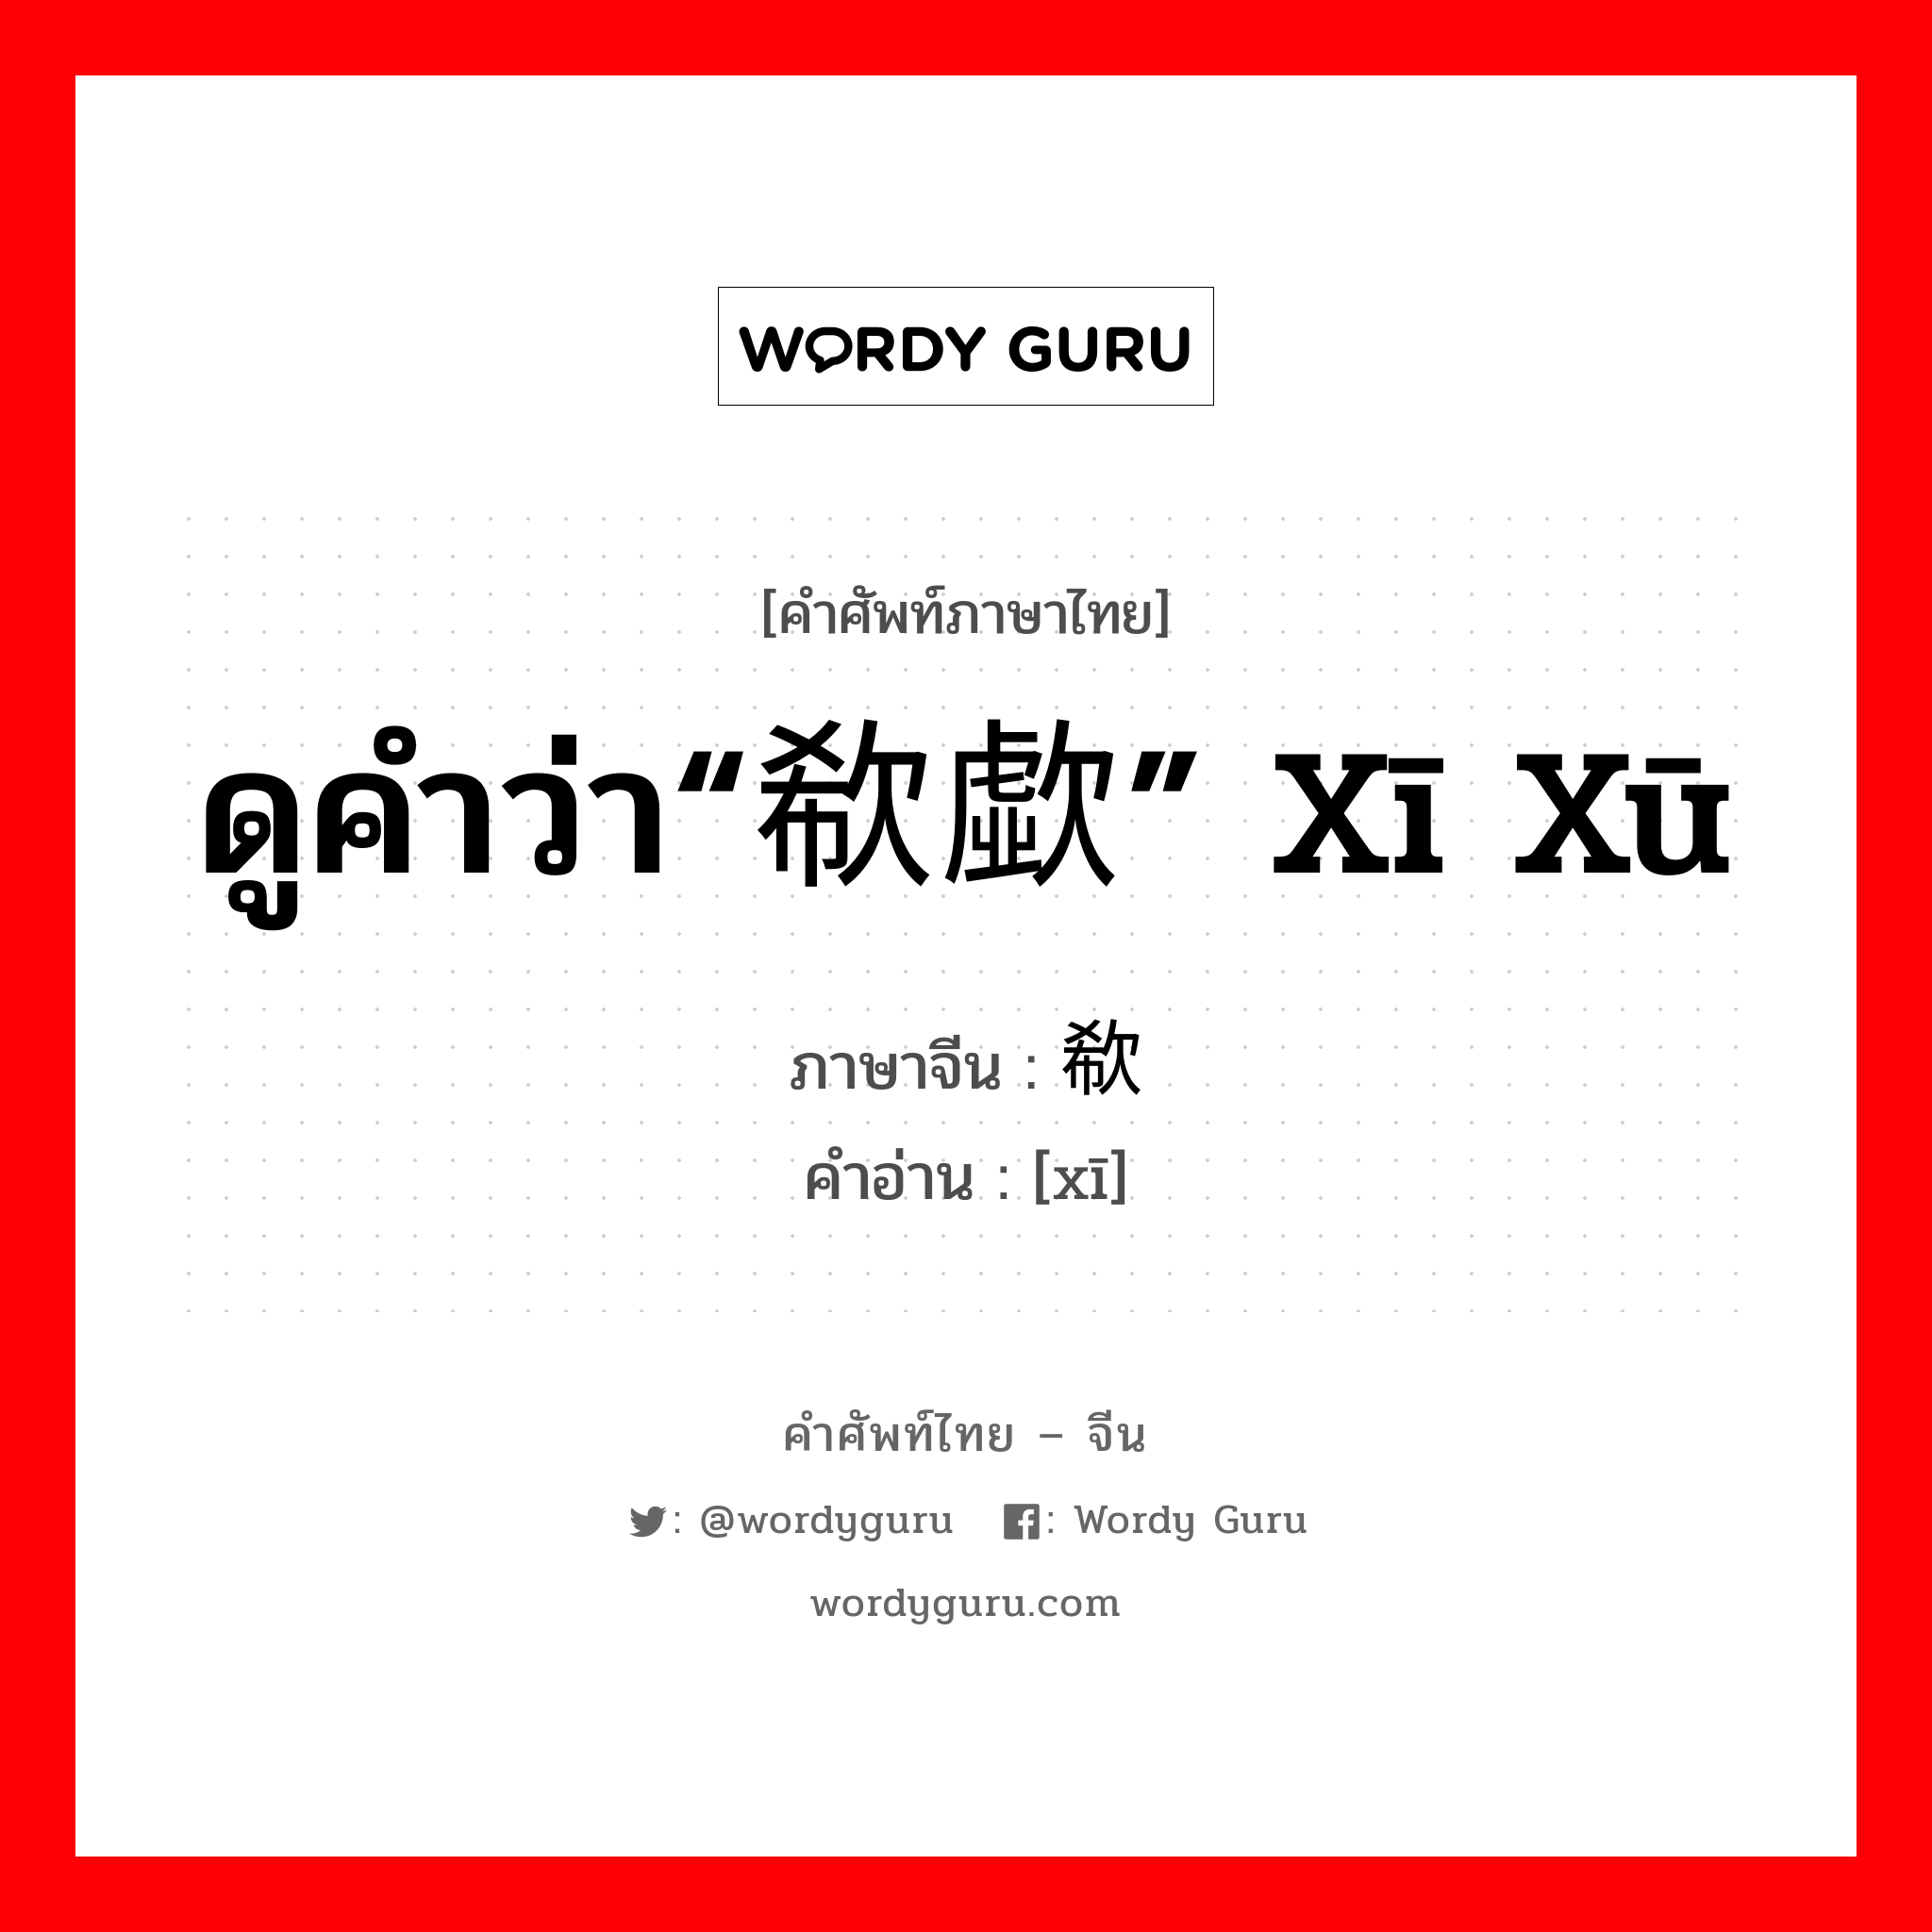 ดูคำว่า“欷歔” xī xū ภาษาจีนคืออะไร, คำศัพท์ภาษาไทย - จีน ดูคำว่า“欷歔” xī xū ภาษาจีน 欷 คำอ่าน [xī]